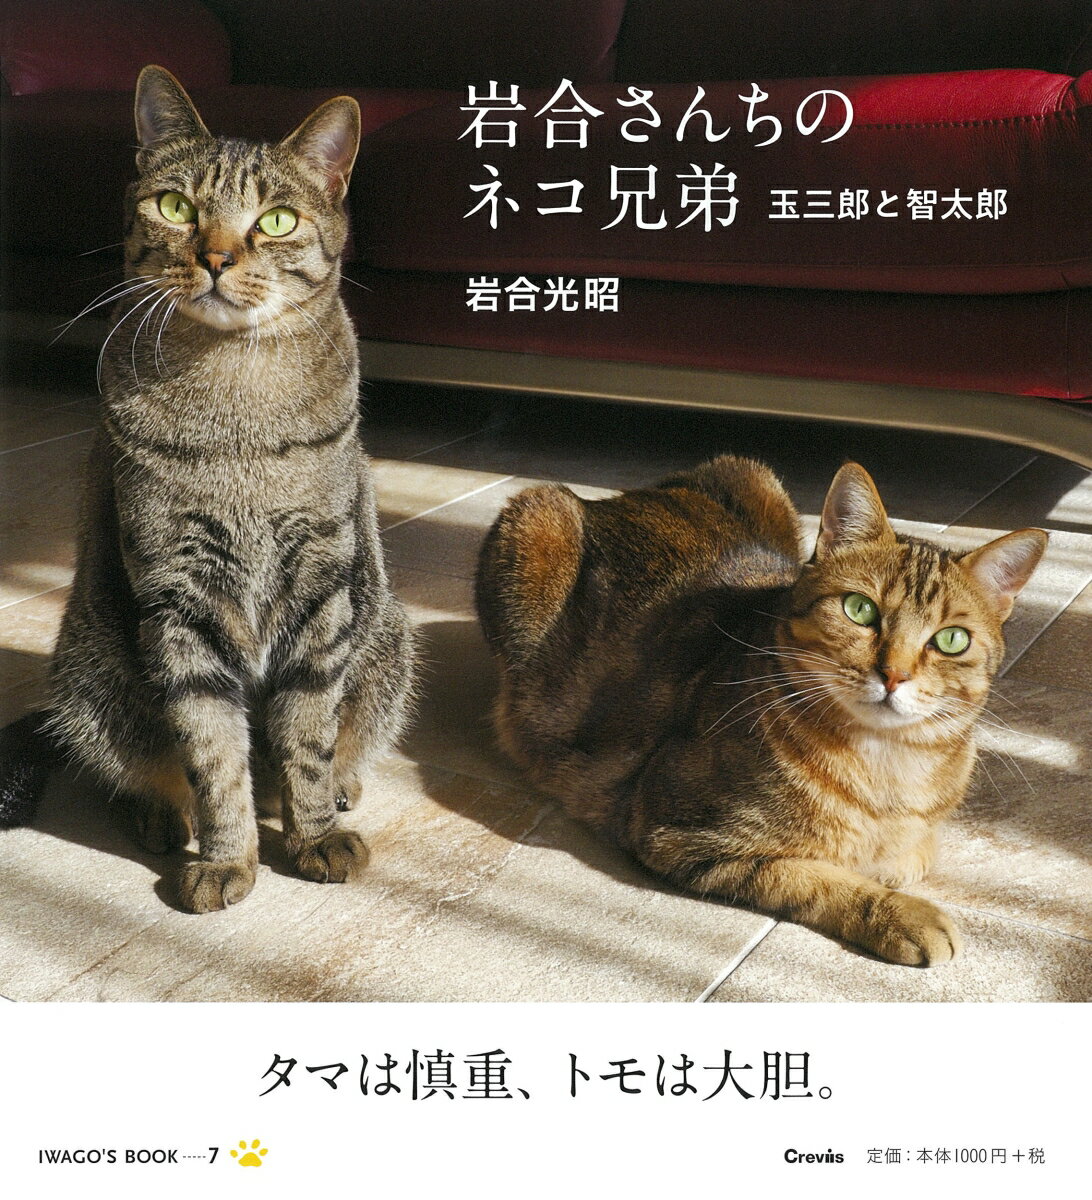 岩合さんちのネコ兄弟 玉三郎と智太郎